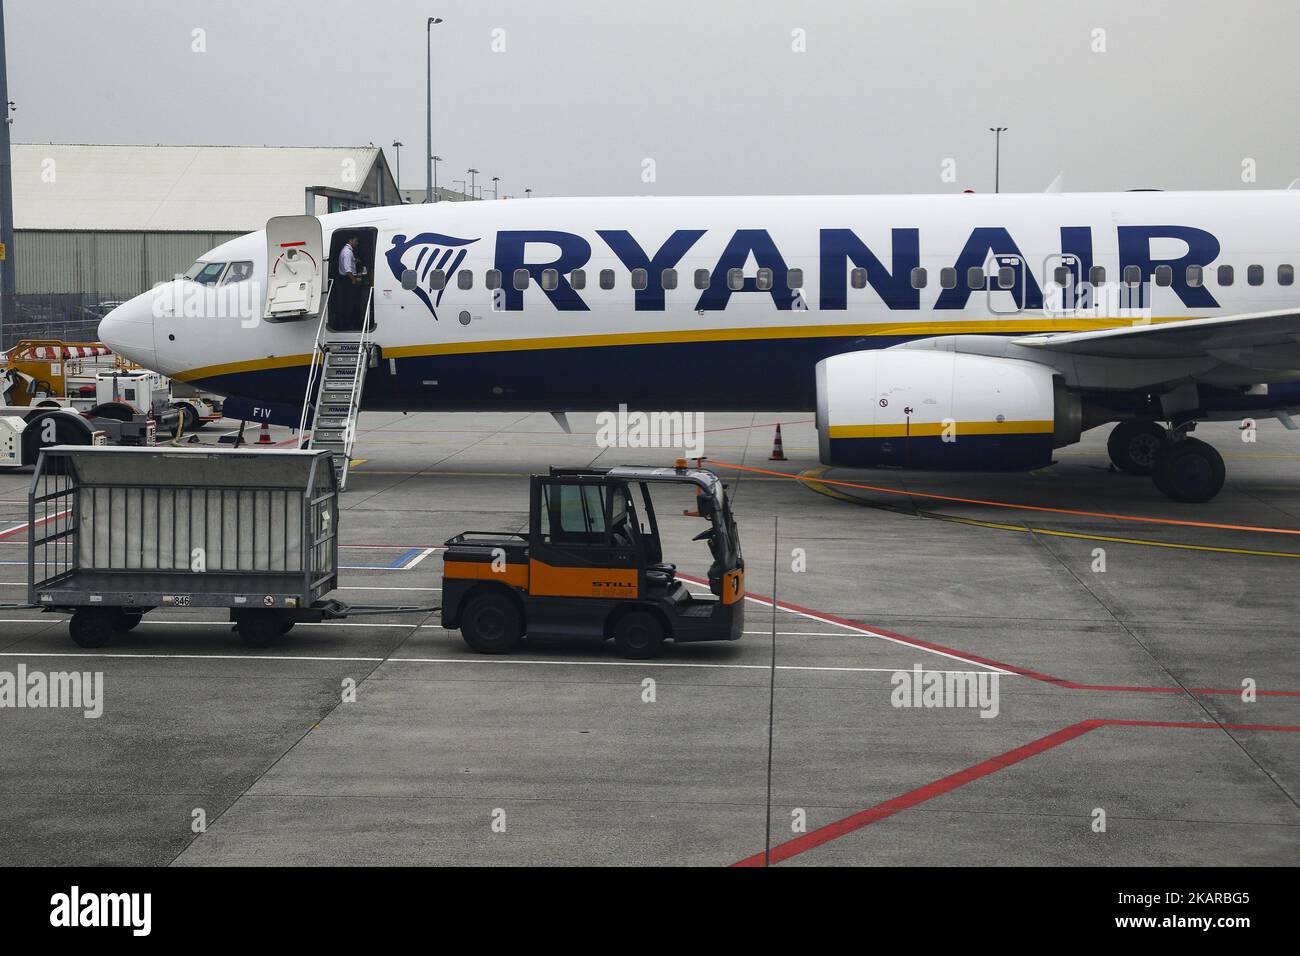 Ryanair Ltd ist eine irische Billigfluggesellschaft, die 1984 gegründet wurde und ihren Hauptsitz in Dublin, Irland, hat. Ryanair besitzt 403 Flugzeuge und hat einen Auftrag über 175 weitere. Ryanair bedient 205 Ziele und gilt als die Fluggesellschaft, die das Billigfliegen in Europa revolutioniert hat. Es ist die Fluggesellschaft, die zuerst zwei Kabinen-Gepäckwagen kostenlos zugelassen hat. Die Fluggäste sind mit schweren Reiseunterbrechungen konfrontiert, nachdem die Fluggesellschaft angekündigt hat, dass sie in den kommenden sechs Wochen täglich 40-50 Flüge stornieren wird, da sie bei der Planung der Pilotferien einen Fehler gemacht haben. (Foto von Nicolas Economou/NurPhoto) Stockfoto